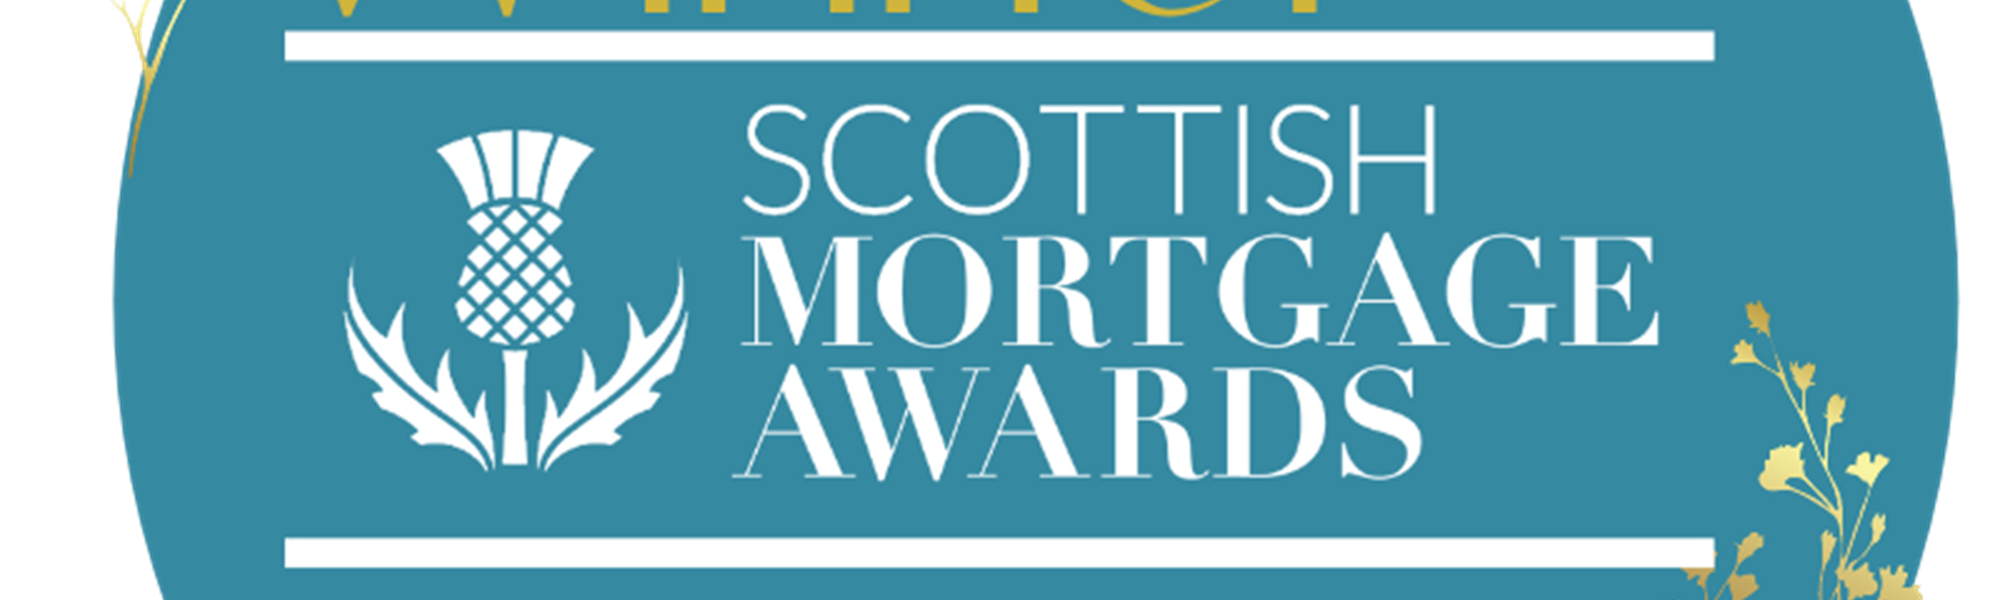 Background image: Mortgage Awards 2021 